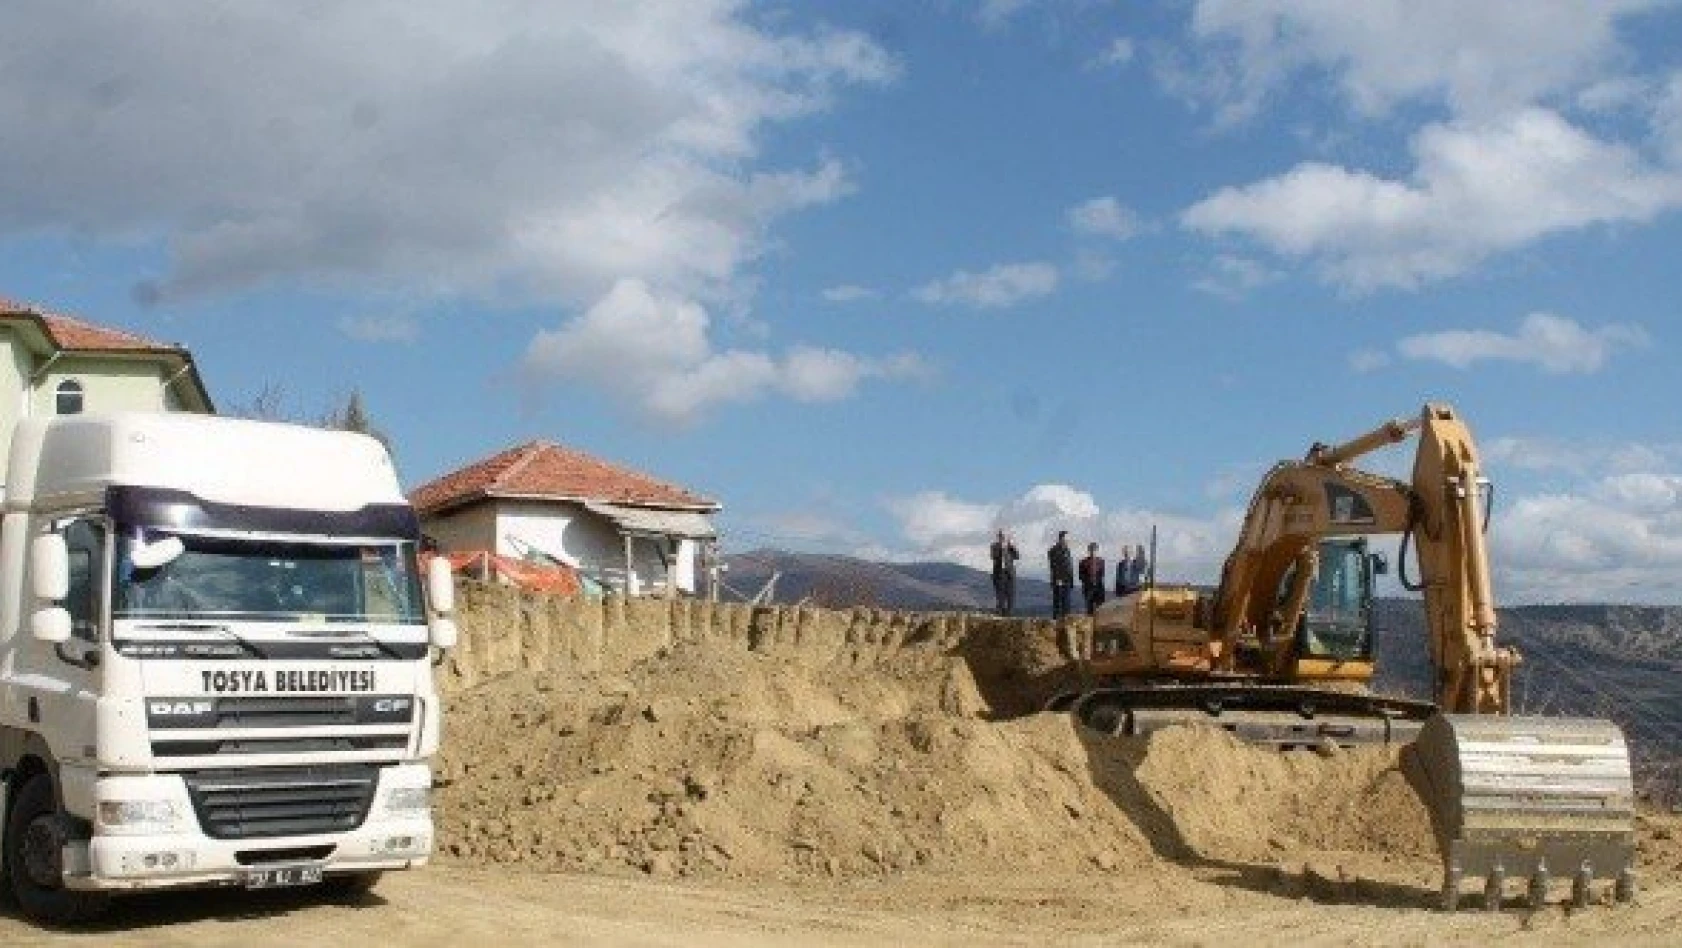 Tosya'da Yatılı Kur'an Kursu inşaatına ilk kazma vuruldu